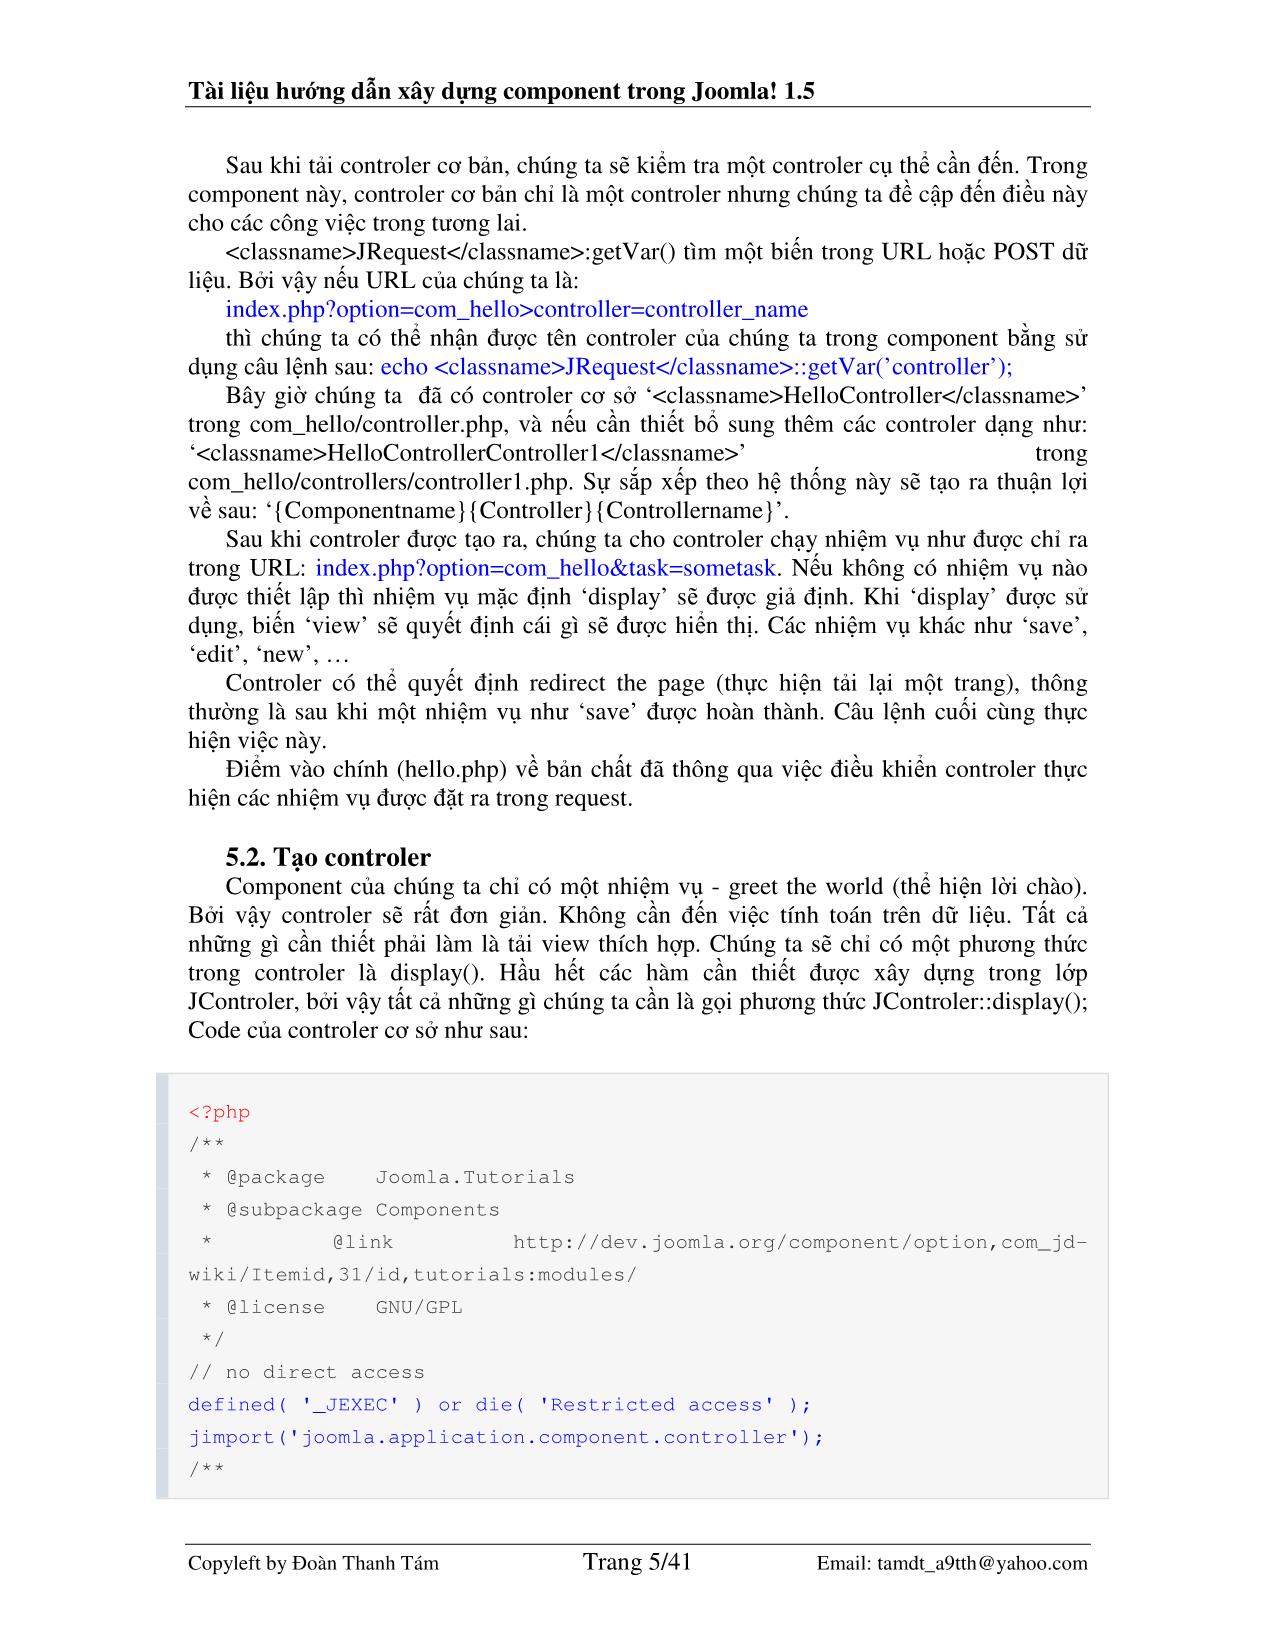 Tài liệu hướng dẫn xây dựng component trong Joomla! 1.5 trang 5